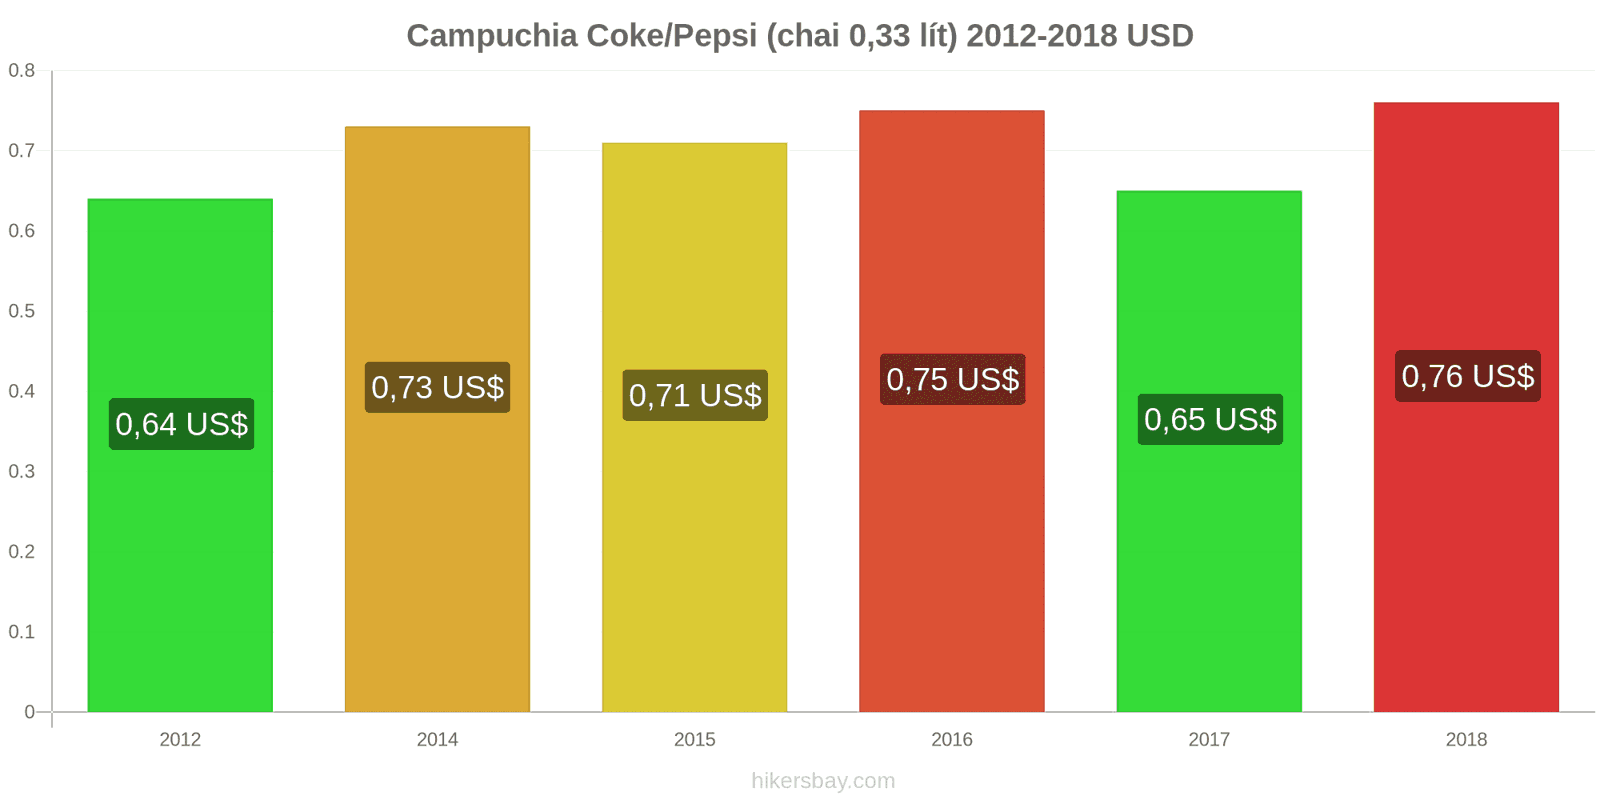 Campuchia thay đổi giá cả Coca-Cola/Pepsi (chai 0.33 lít) hikersbay.com